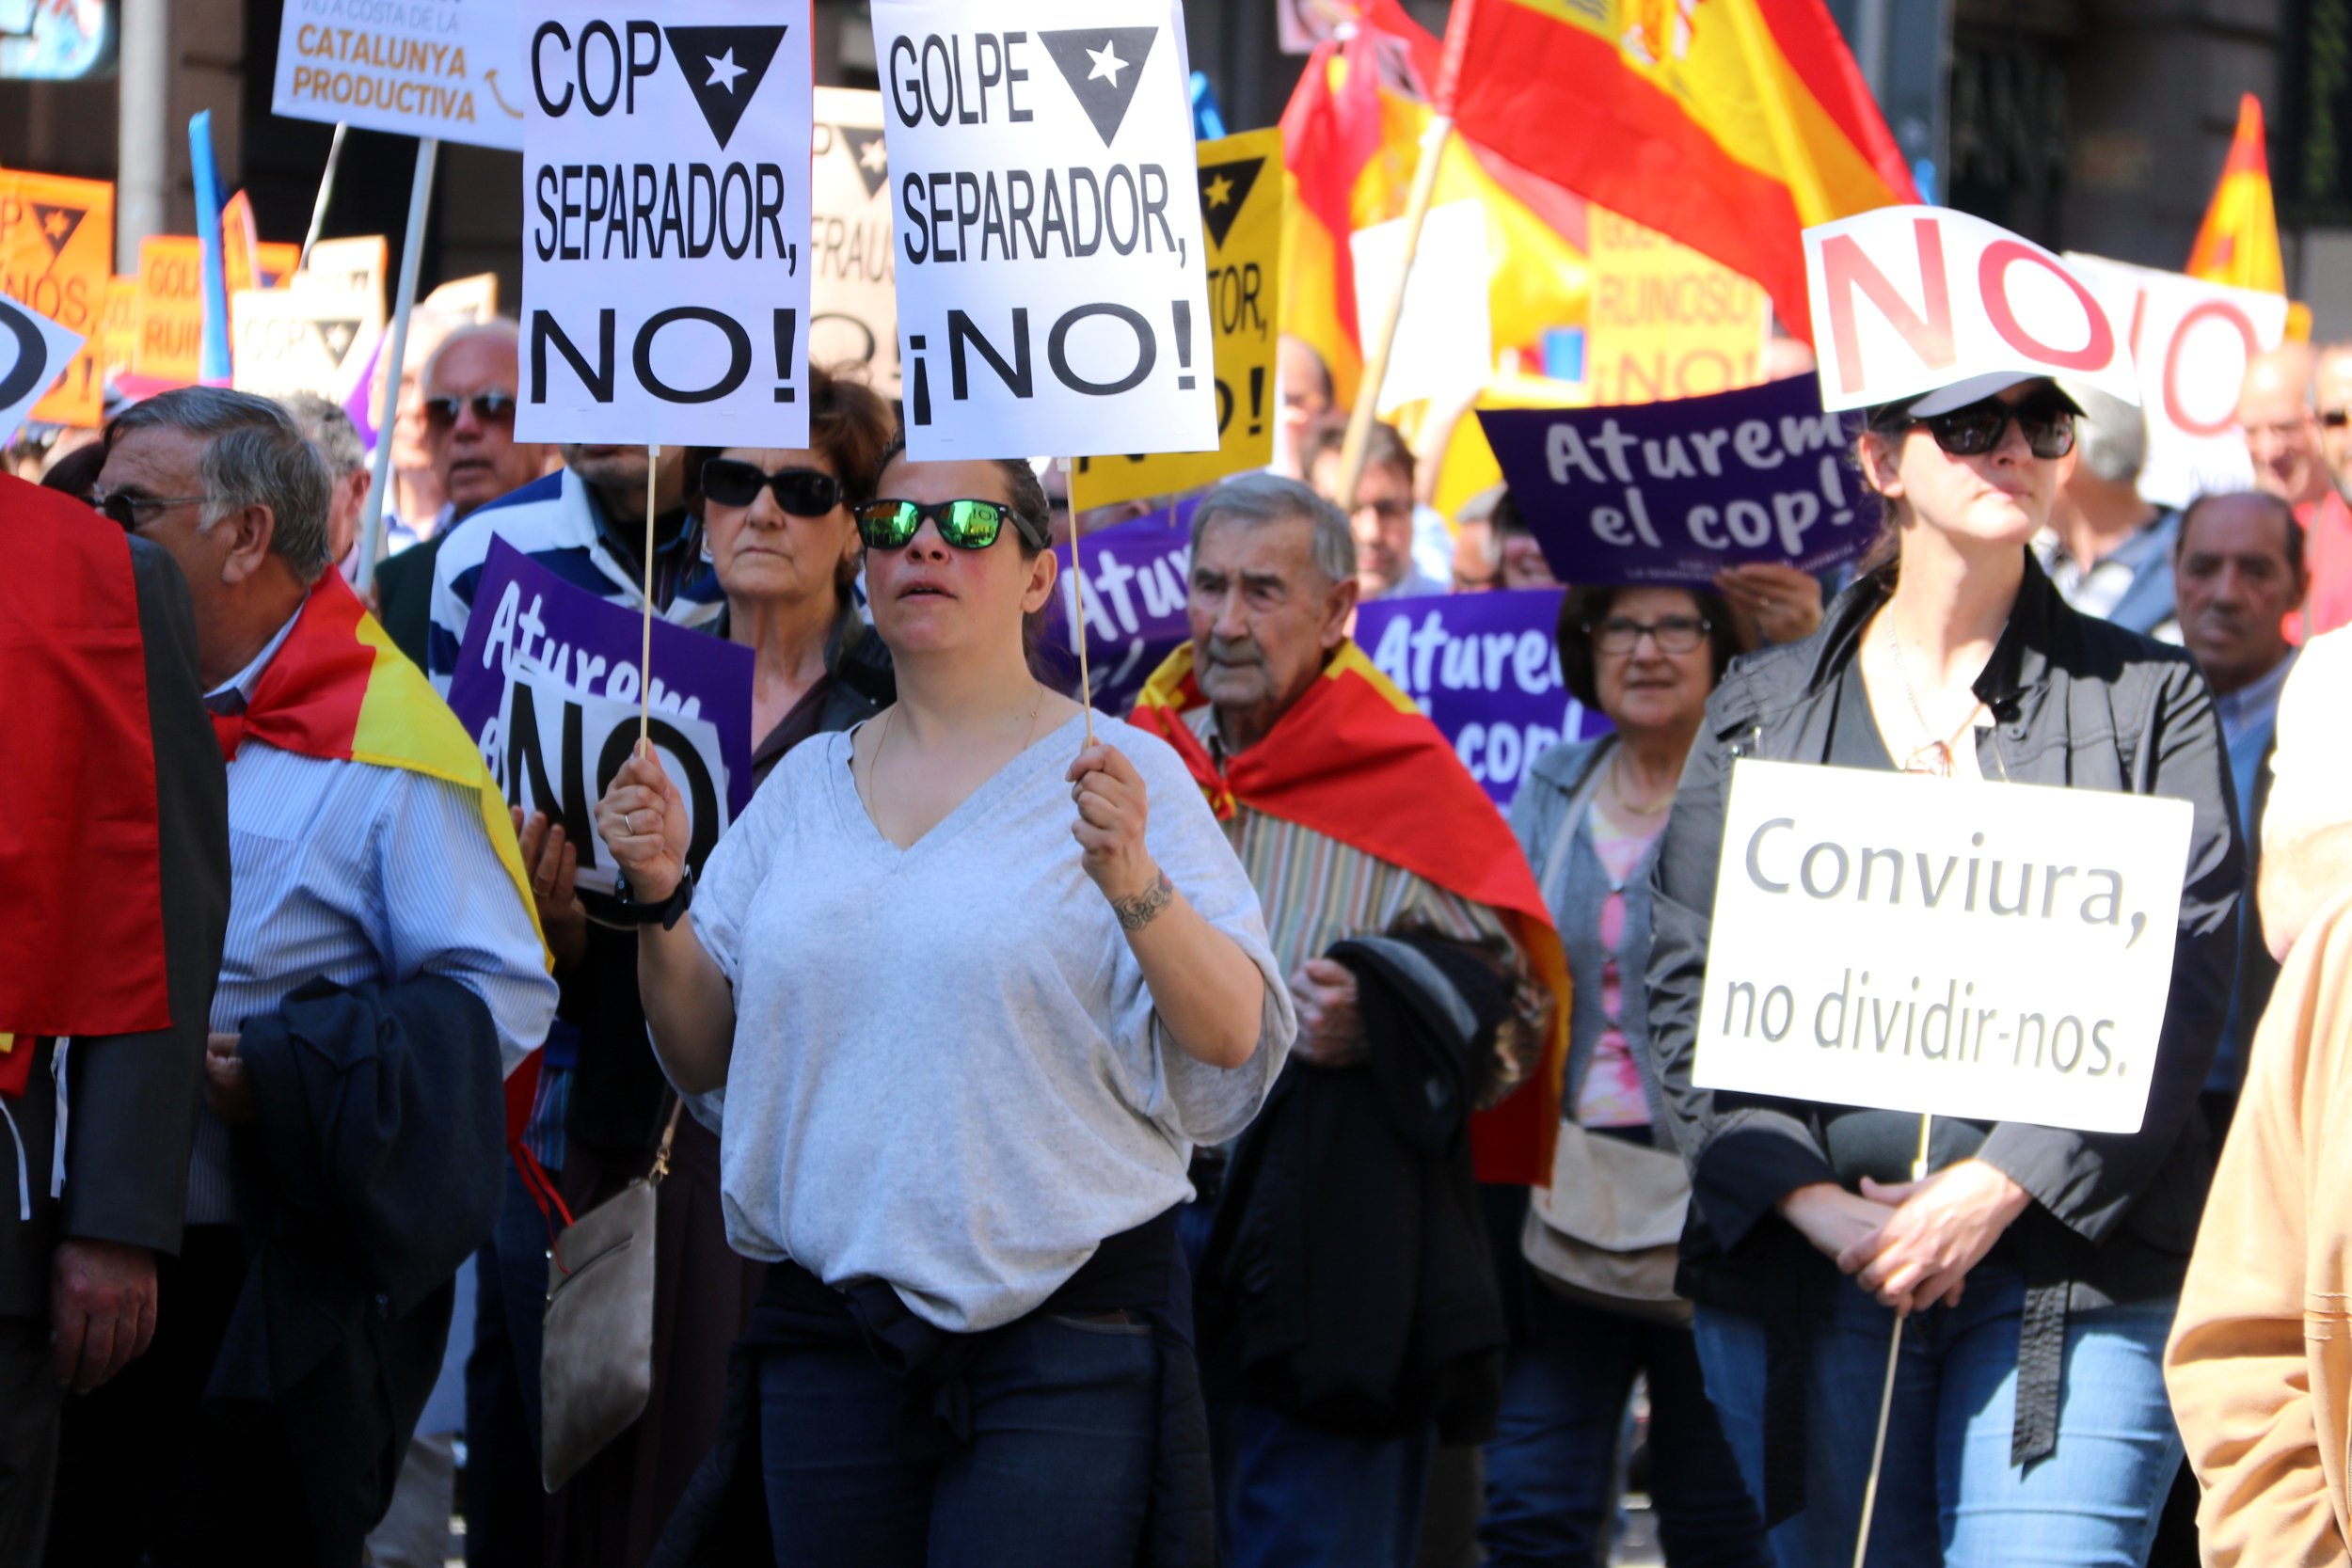 Pancartes en català (i amb faltes d’ortografia) a la manifestació unionista